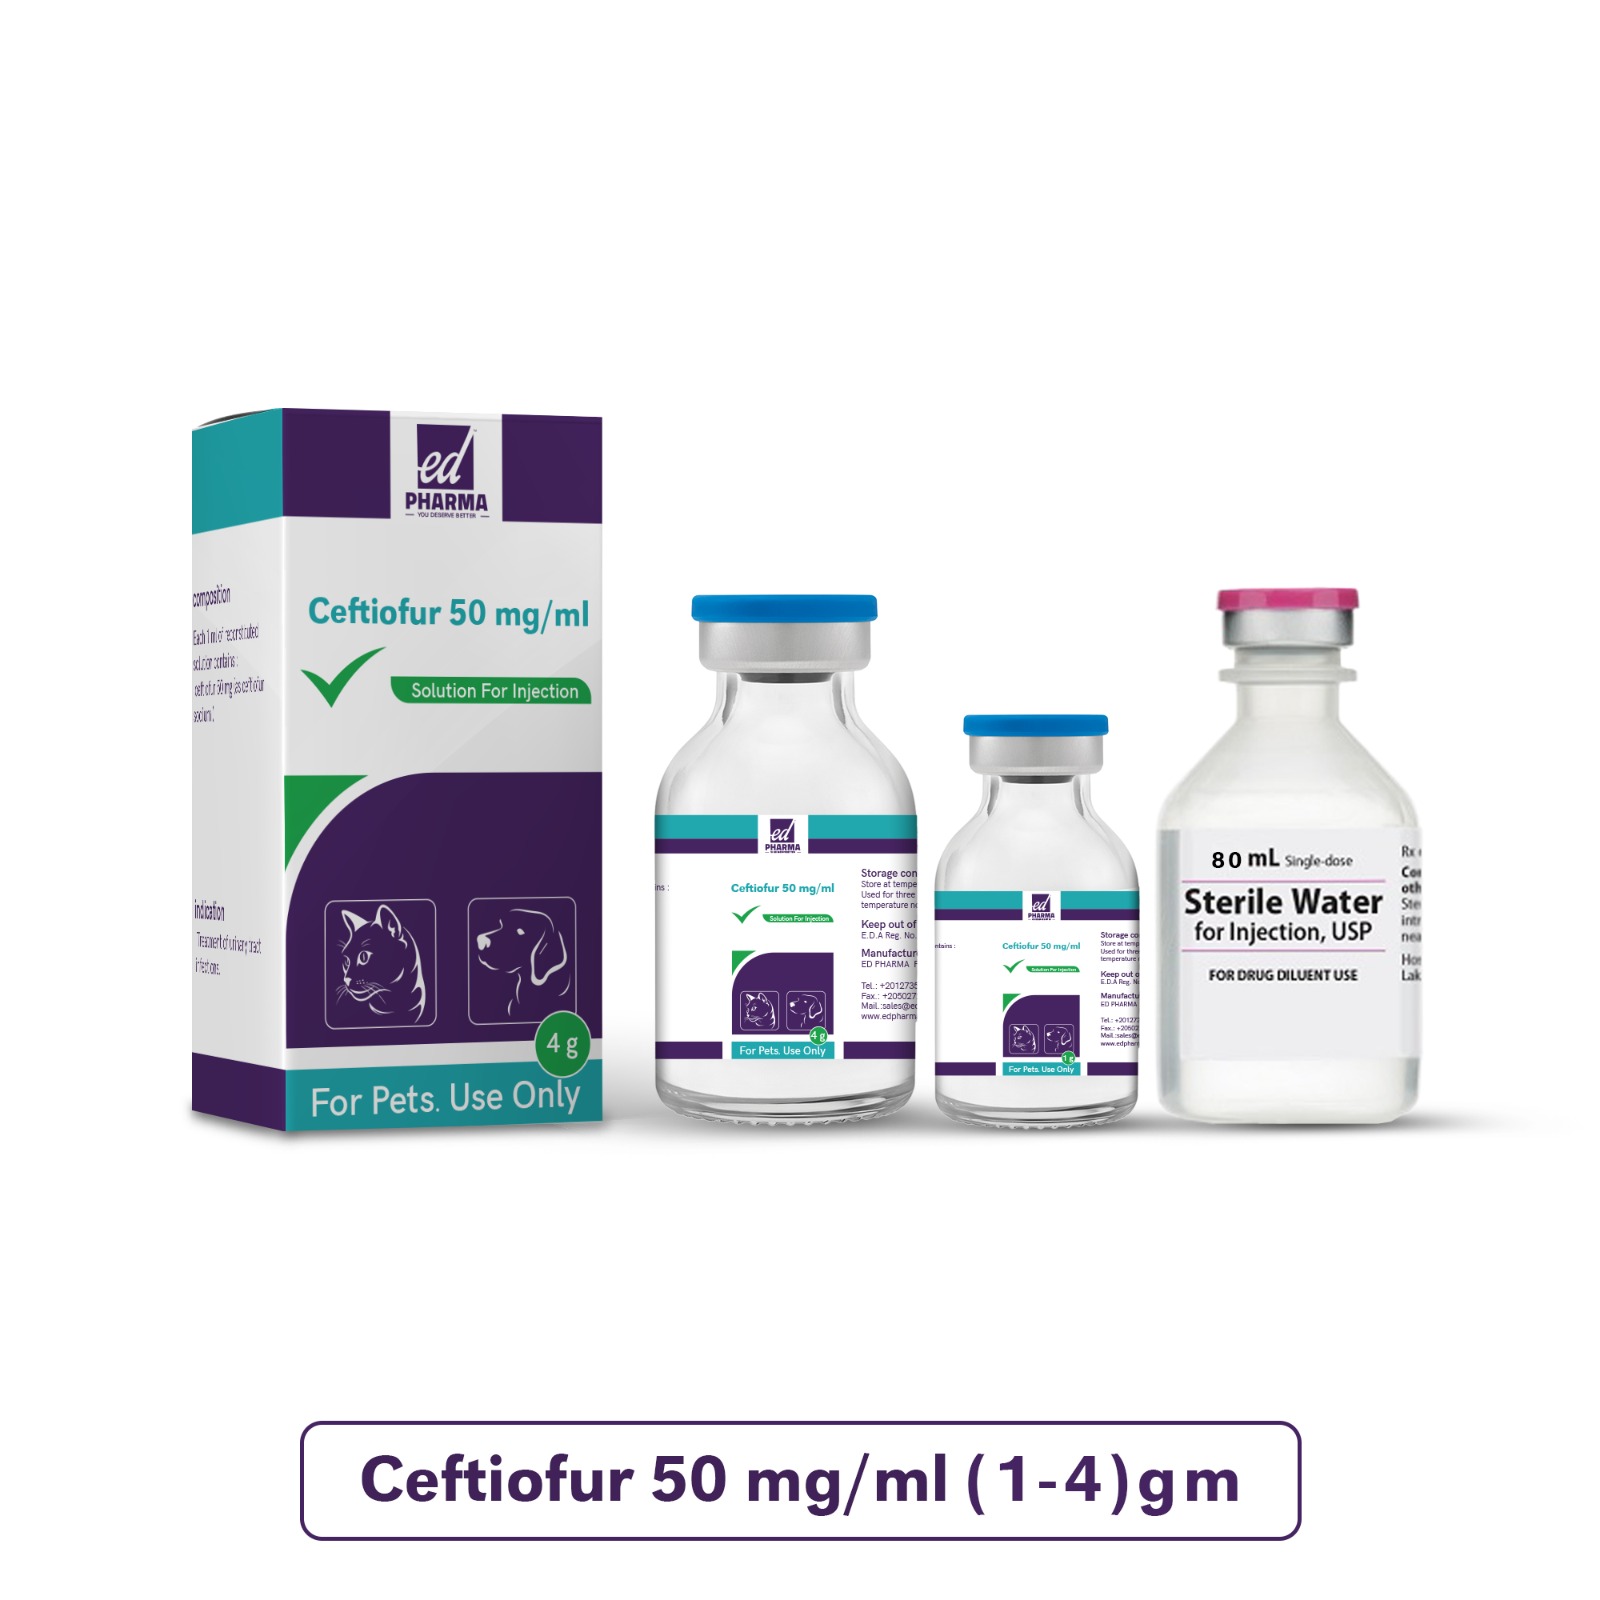 Ceftiofur 50 mg/ml